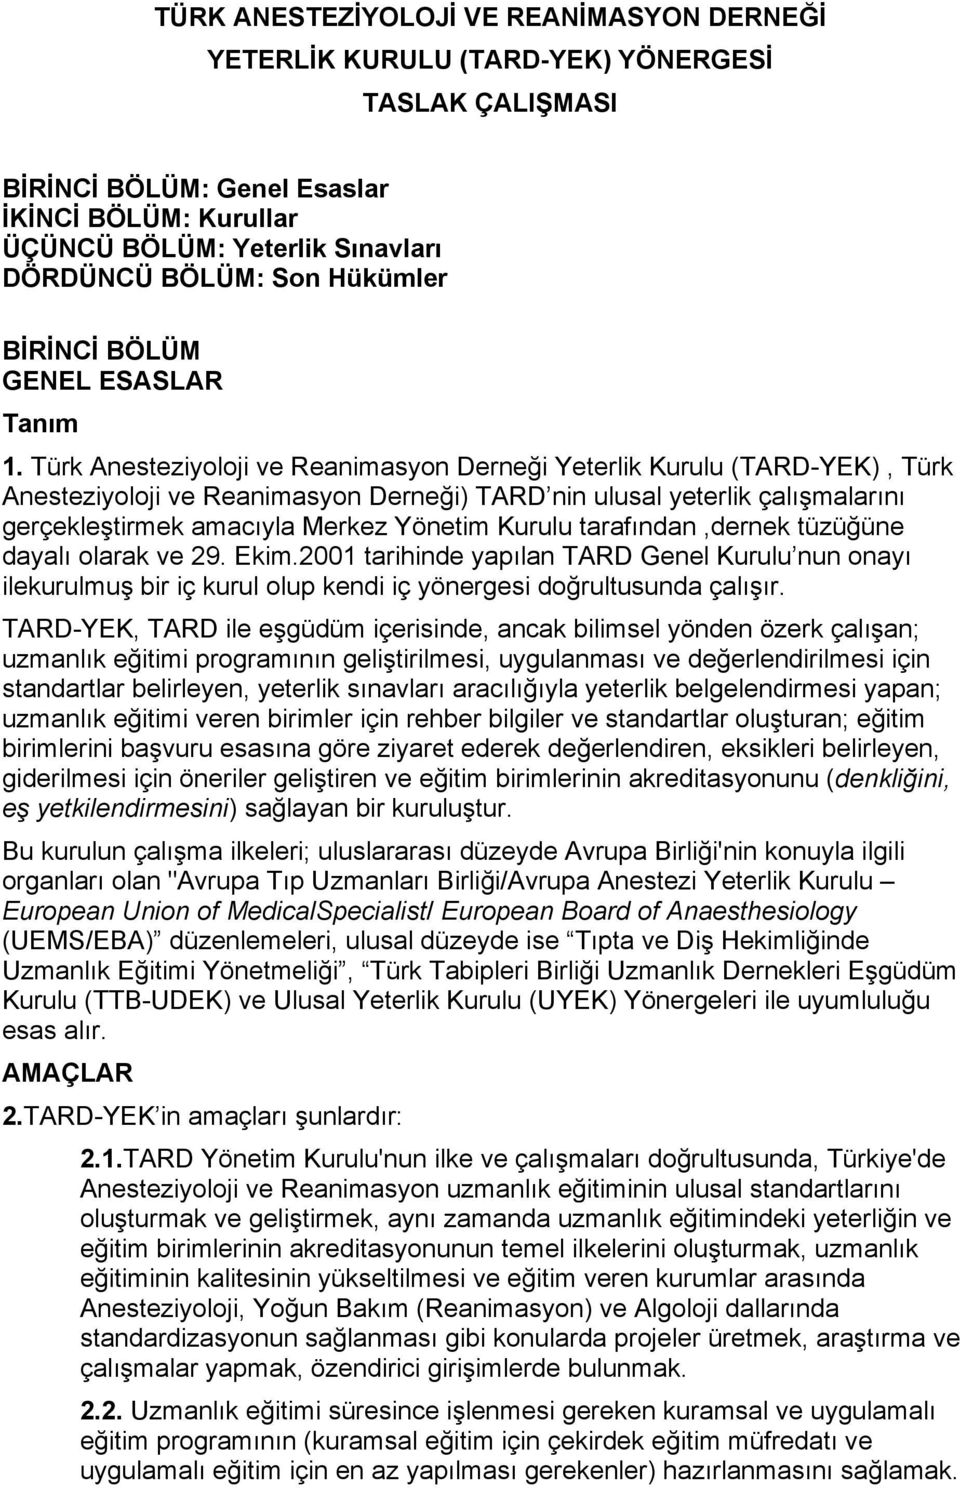 Türk Anesteziyoloji ve Reanimasyon Derneği Yeterlik Kurulu (TARD-YEK), Türk Anesteziyoloji ve Reanimasyon Derneği) TARD nin ulusal yeterlik çalışmalarını gerçekleştirmek amacıyla Merkez Yönetim